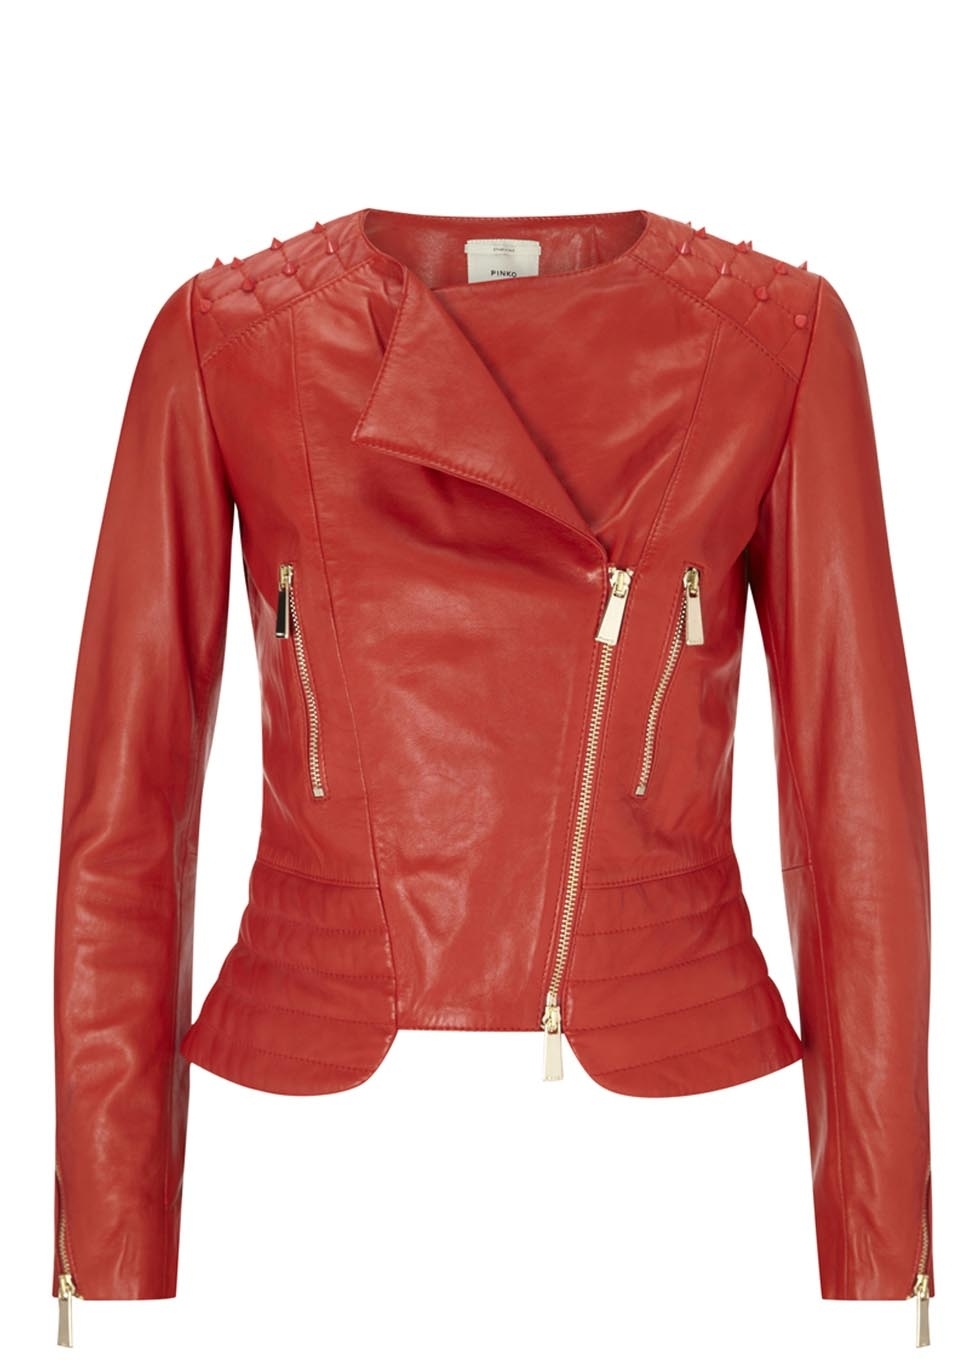 Brick Lane red studded leather jacket